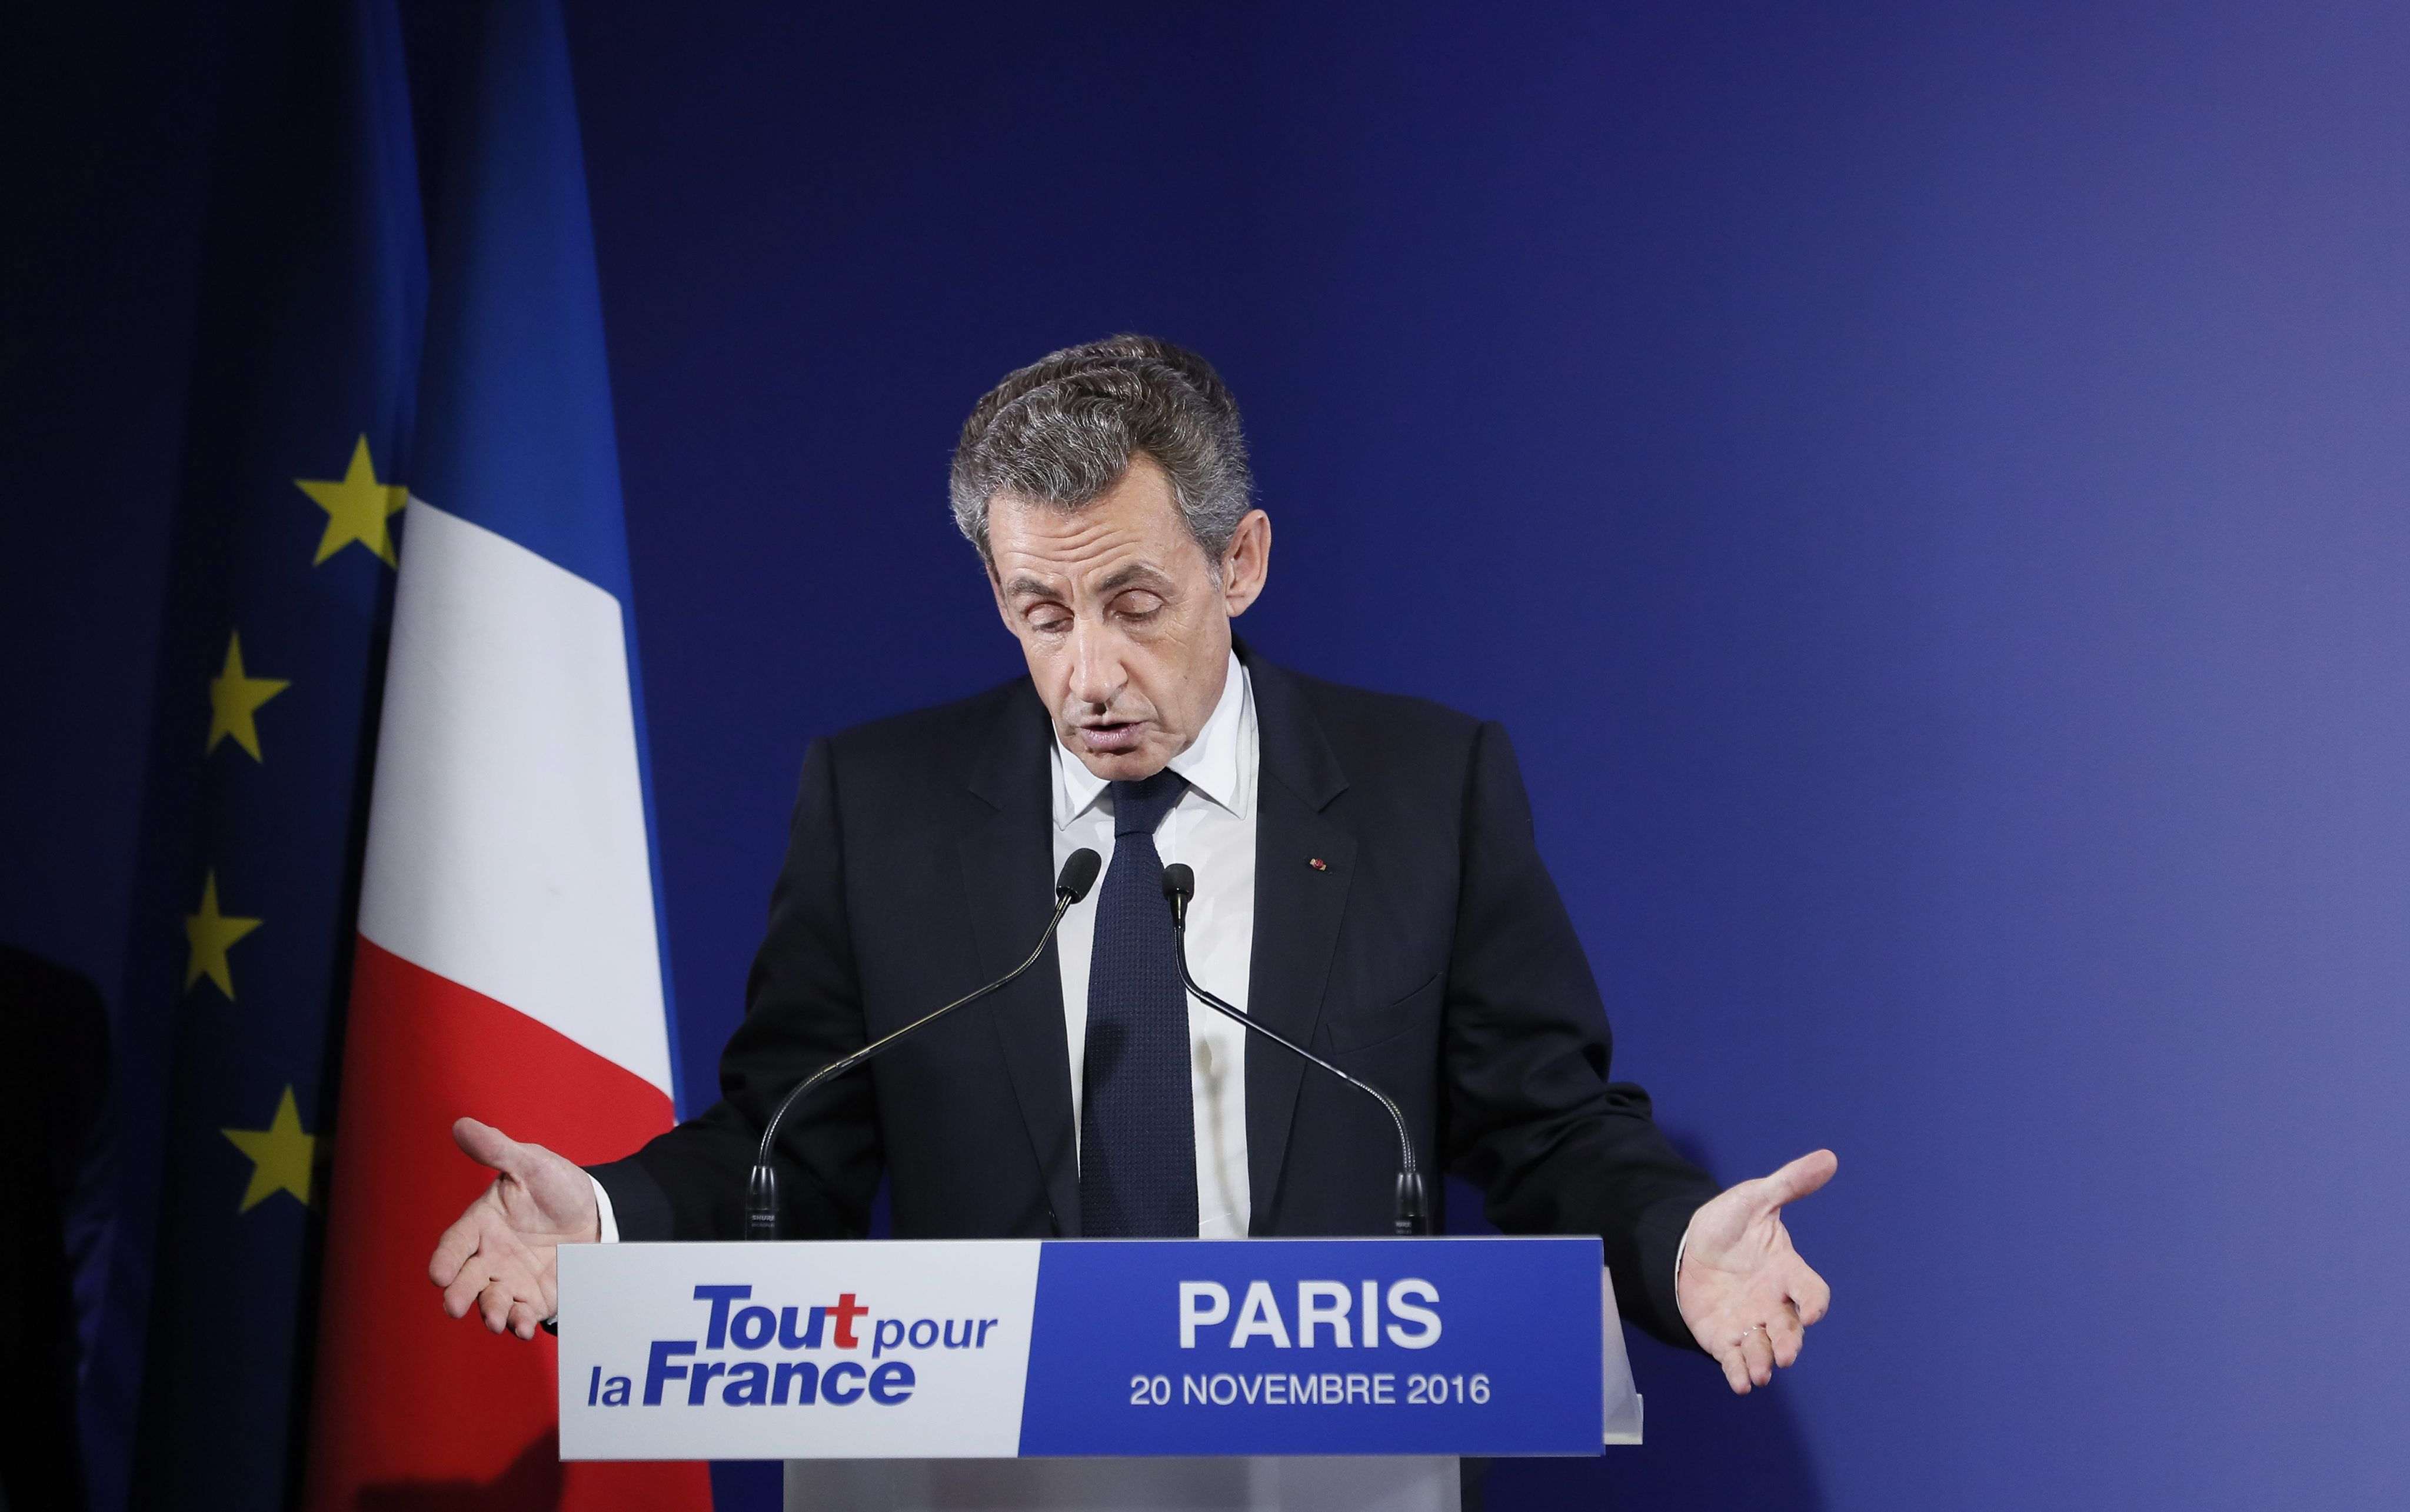 El expresidente francés Nicolas Sarkozy, imputado por asociación criminal